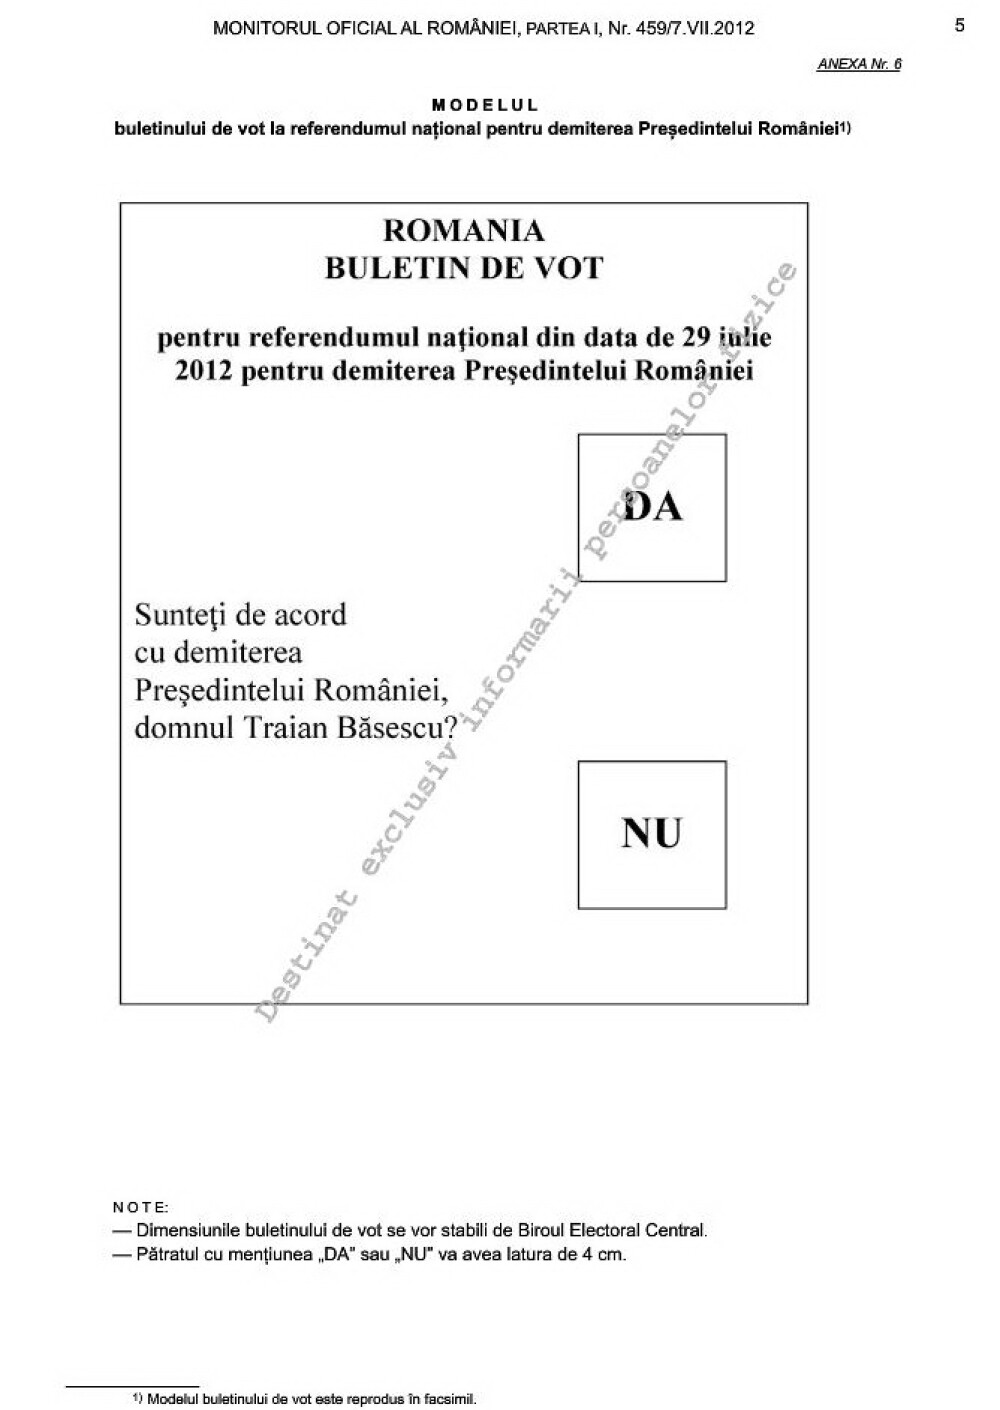 Cum arata MODELUL buletinului de vot pentru referendumul de demitere a presedintelui Traian Basescu - Imaginea 1